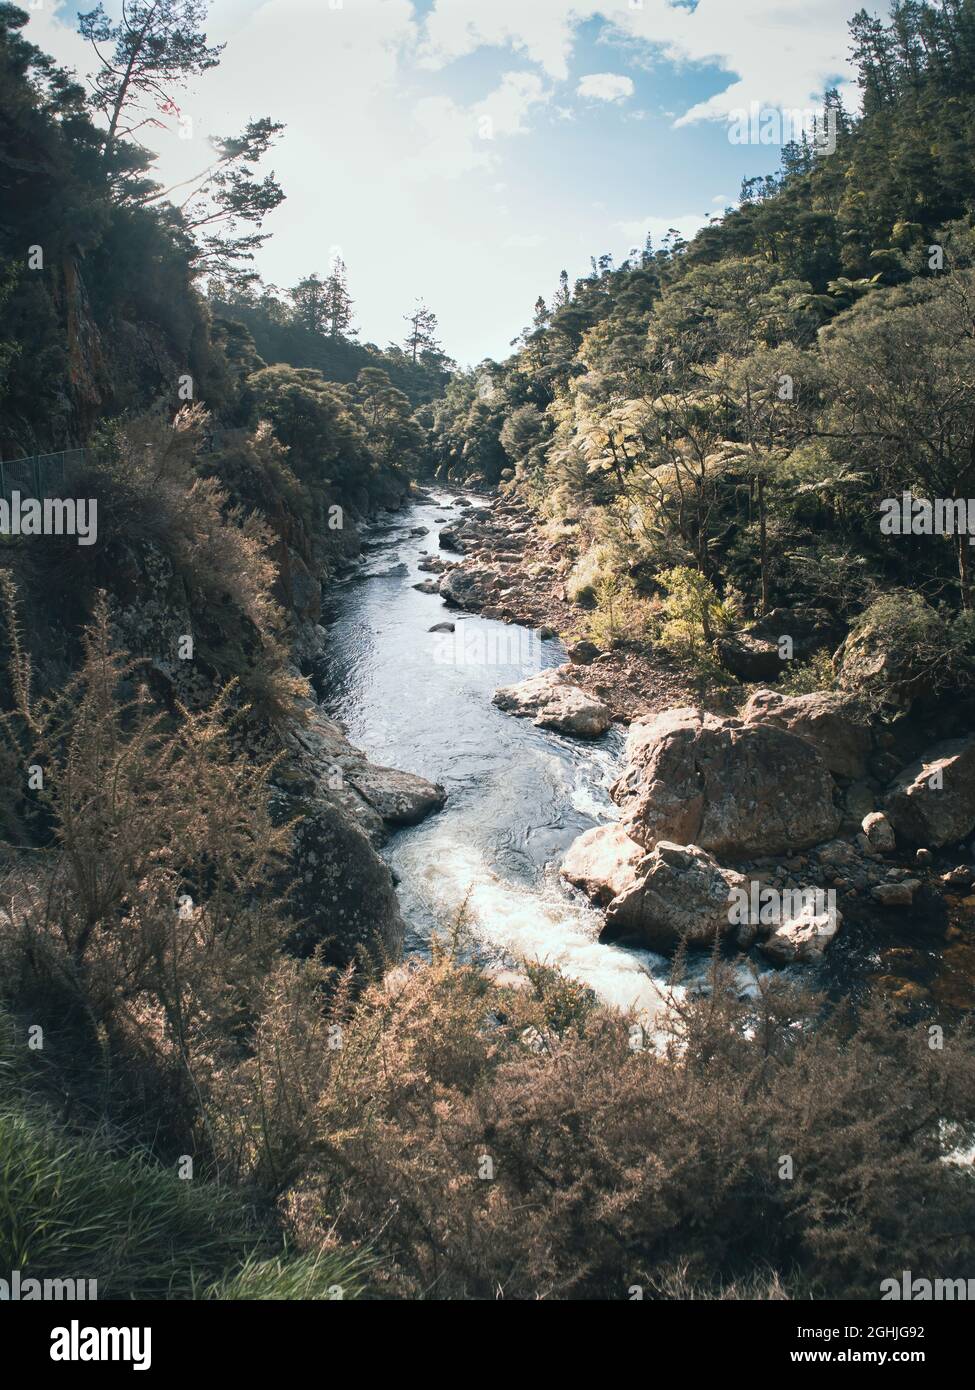 Ohinemuri River in Karangahake Gorge, New Zealand Stock Photo